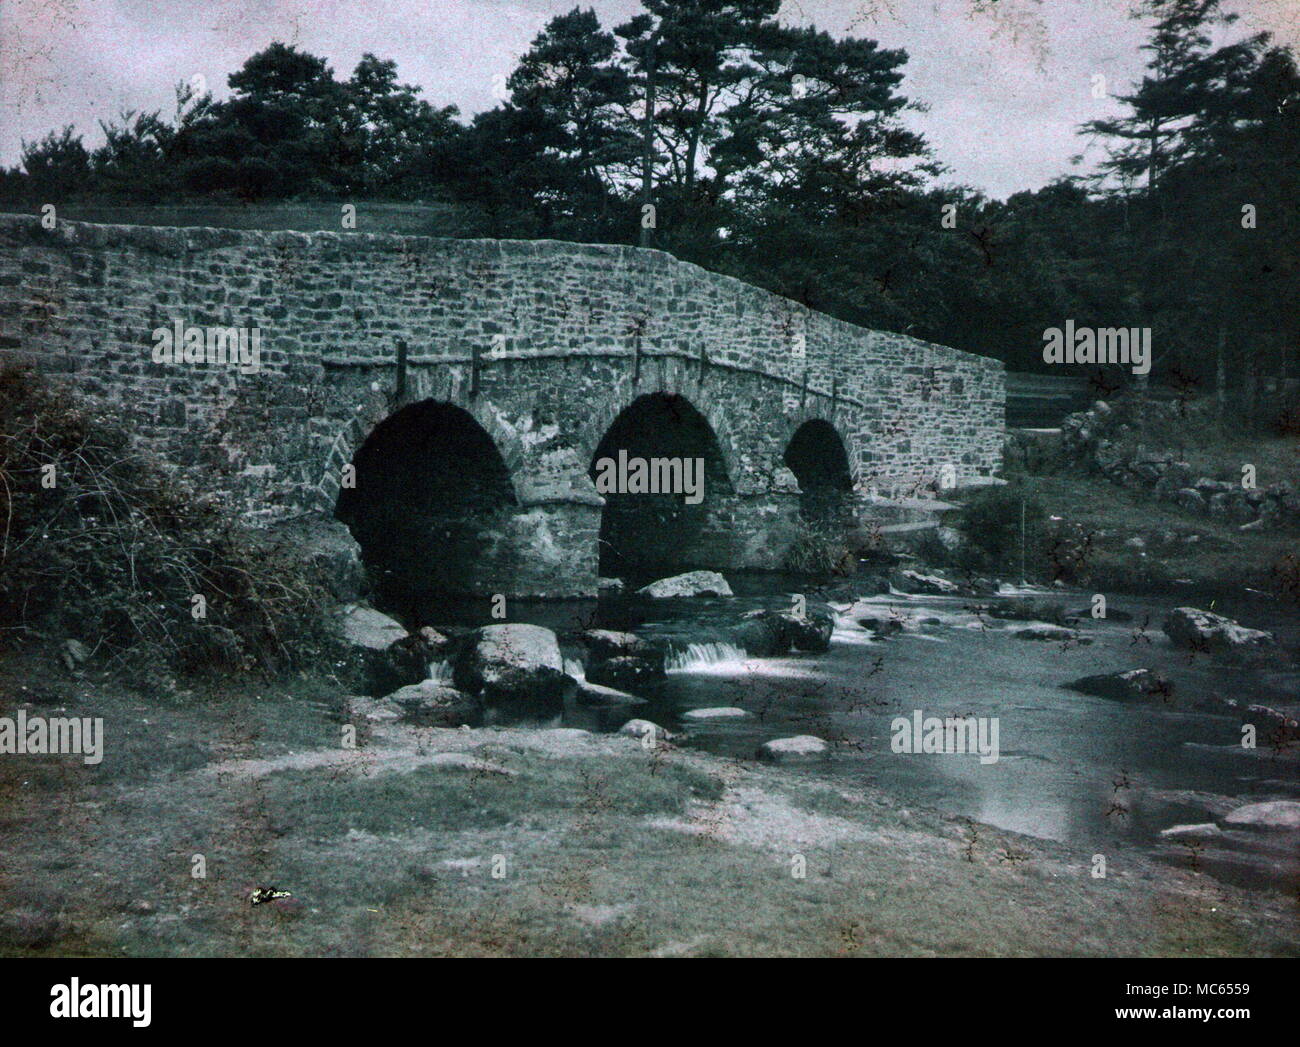 AJAXNETPHOTO. 1911 (ca.). MERIONETHSHIRE, Wales, Vereinigtes Königreich. - Steinerne Brücke über einen Fluss; ANSICHT GEMACHT MIT FRÜHEN AUTOCHROME FARBE FILM. Fotograf: unbekannt © DIGITAL IMAGE COPYRIGHT AJAX VINTAGE BILDARCHIV QUELLE: AJAX VINTAGE BILDARCHIV SAMMLUNG REF: C) (AVL ACHM 1911 37 Stockfoto